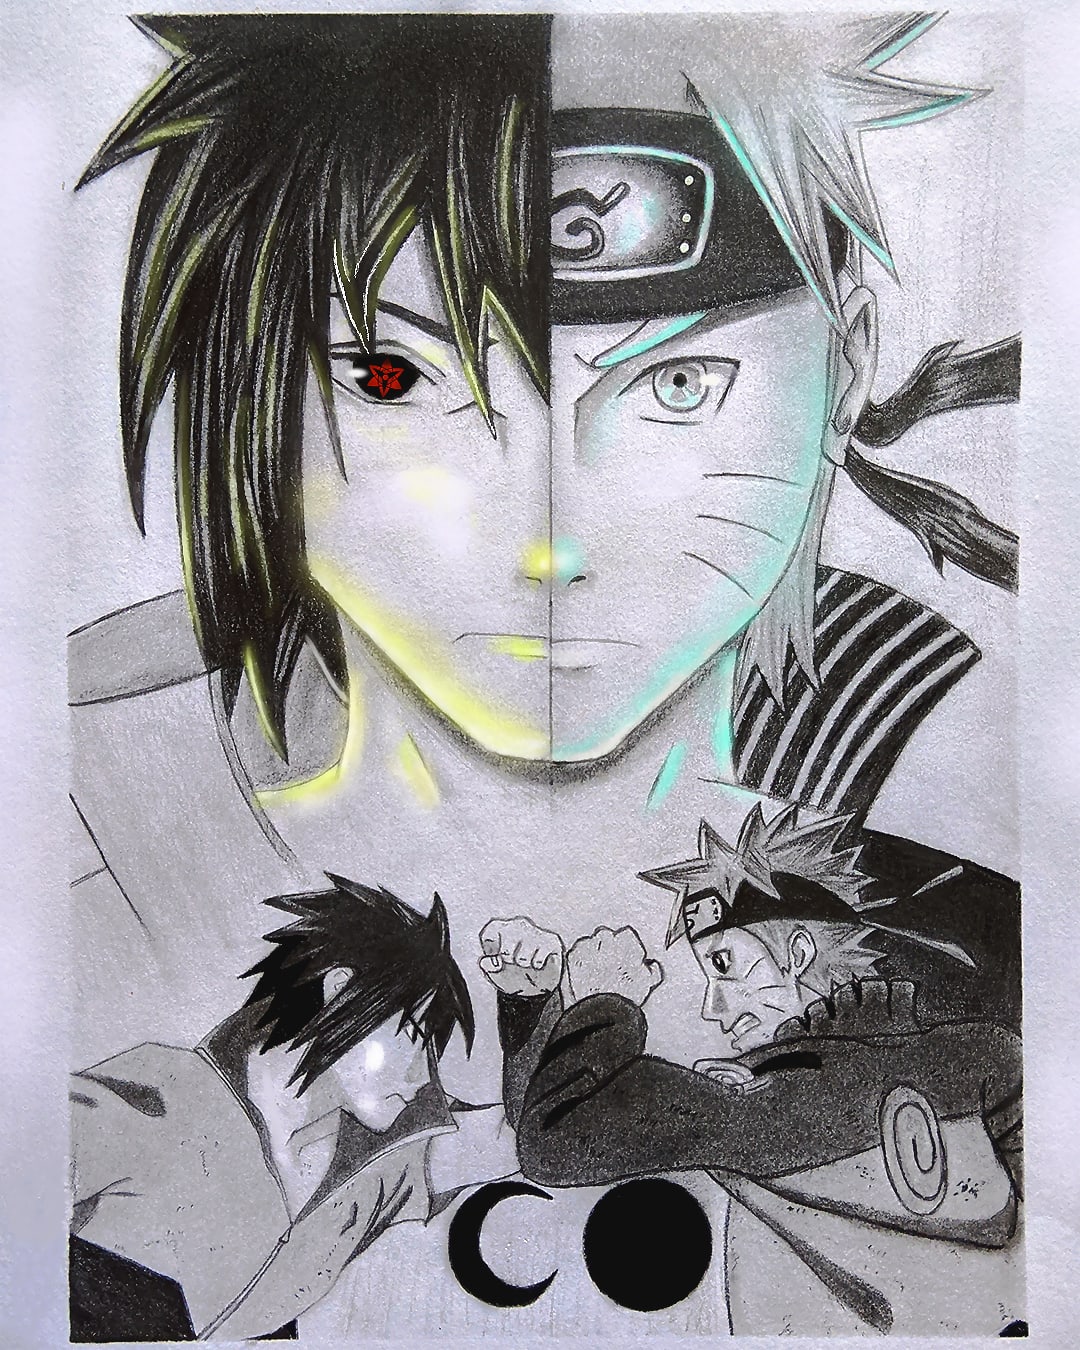 Sasuke from naruto - Anime arts - Drawings & Illustration, People &  Figures, Animation, Anime, & Comics, Anime - ArtPal